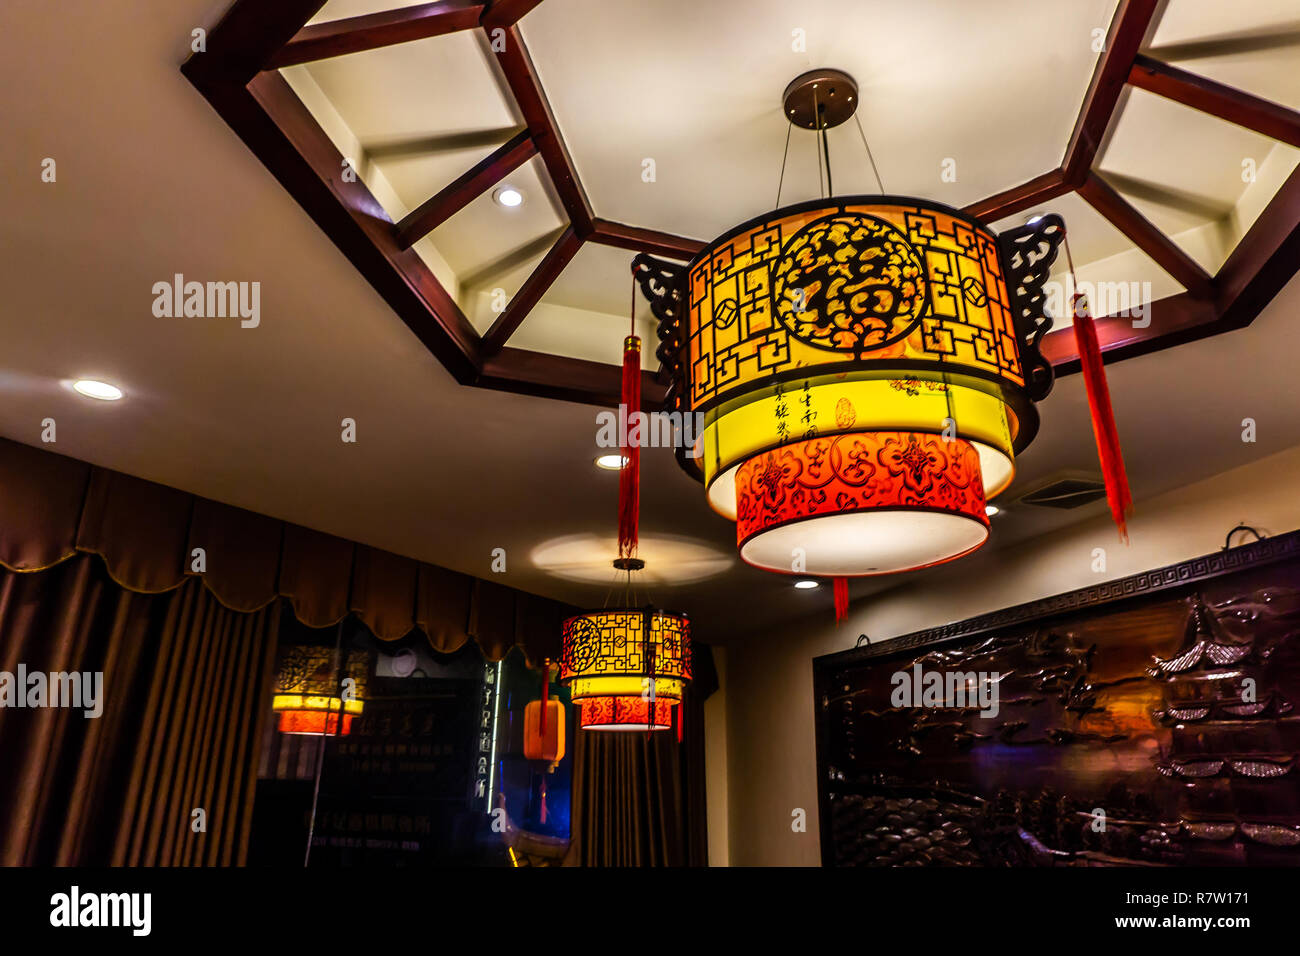 Traditionelle chinesische Buchstaben Ornamente Laterne Lampen mit  Beleuchtung an der Decke. Übersetzung: "Glück Stockfotografie - Alamy